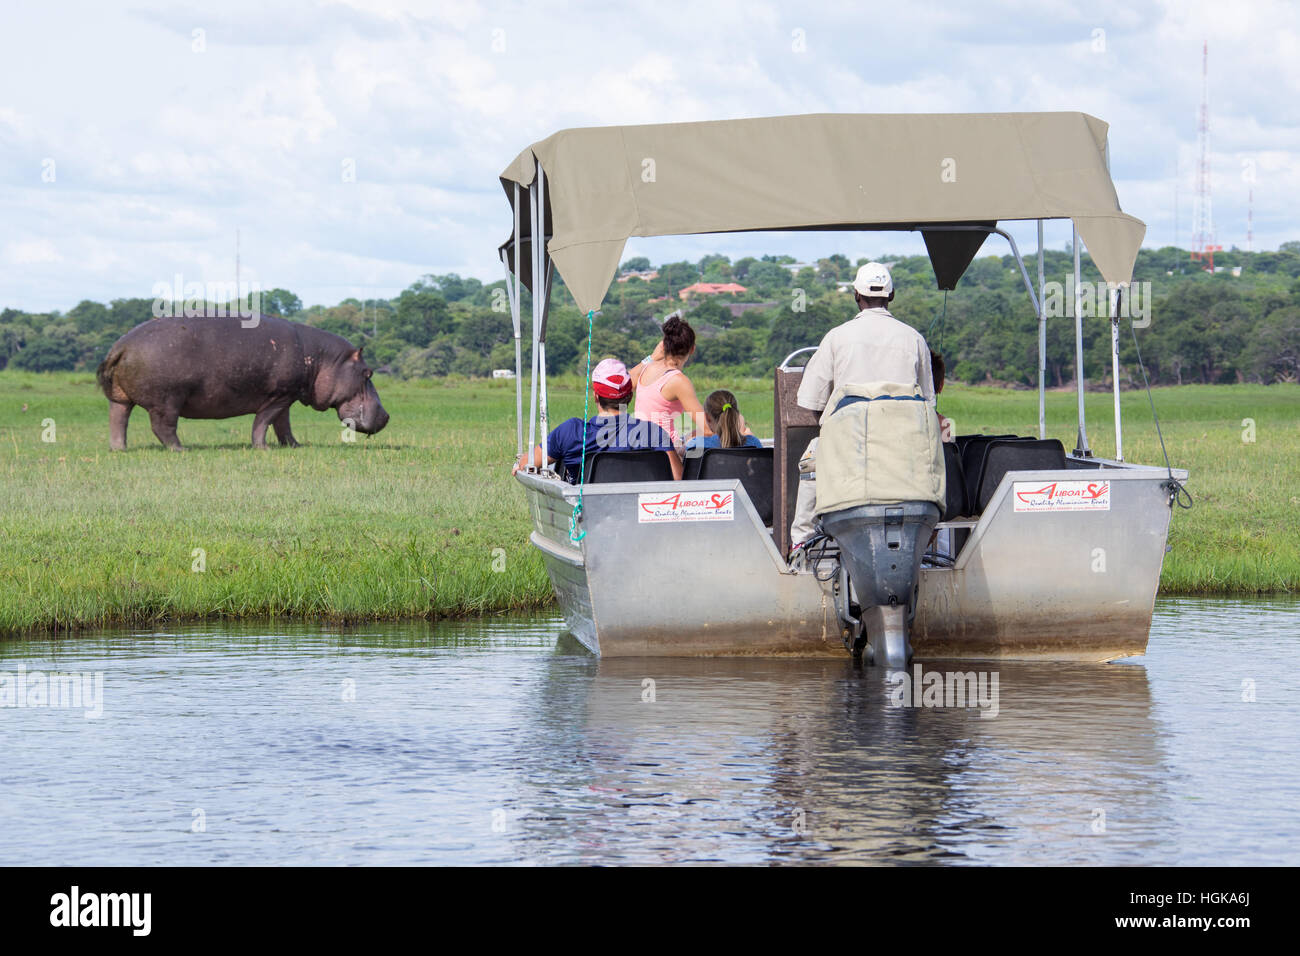 Les touristes sur une river safari dans le Parc National de Chobe, Botswana, Africa Banque D'Images